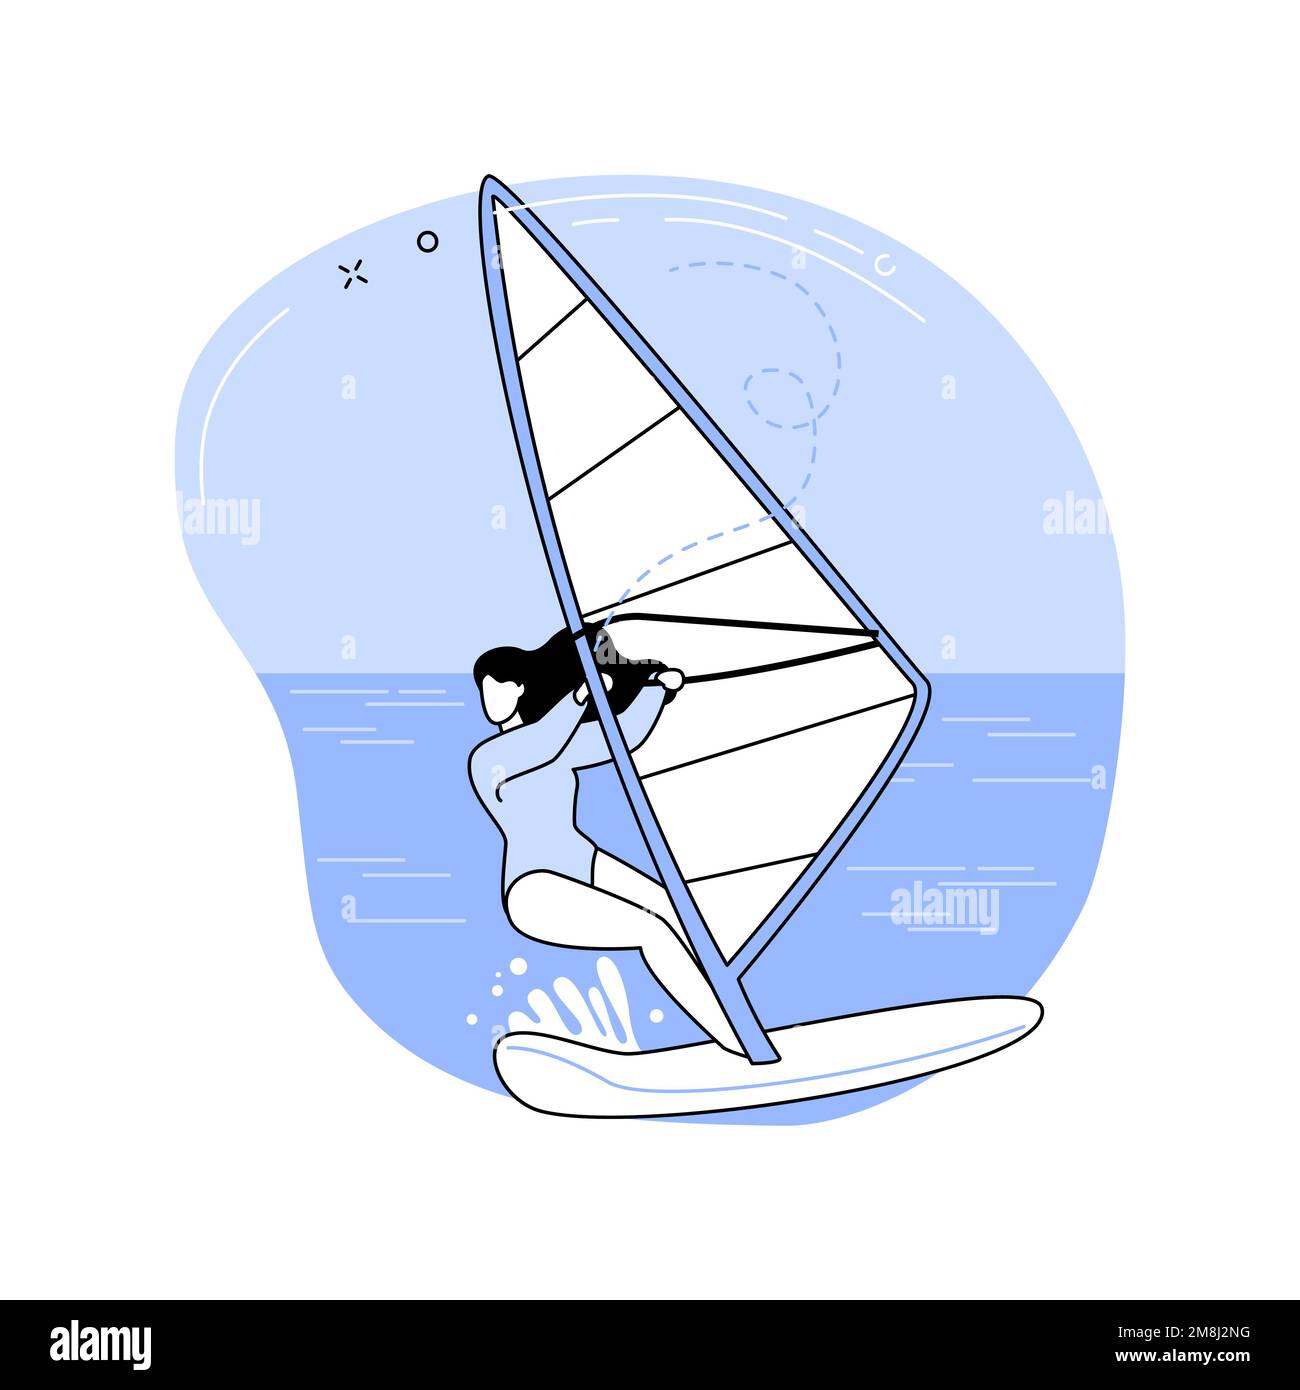 Windsurfen Spaß isoliert Cartoon-Vektor-Illustrationen. Mädchen Windsurfen während Sommerferien, Reisen mit Spaß, Segeln Wassersport Urlaub, re Stock Vektor